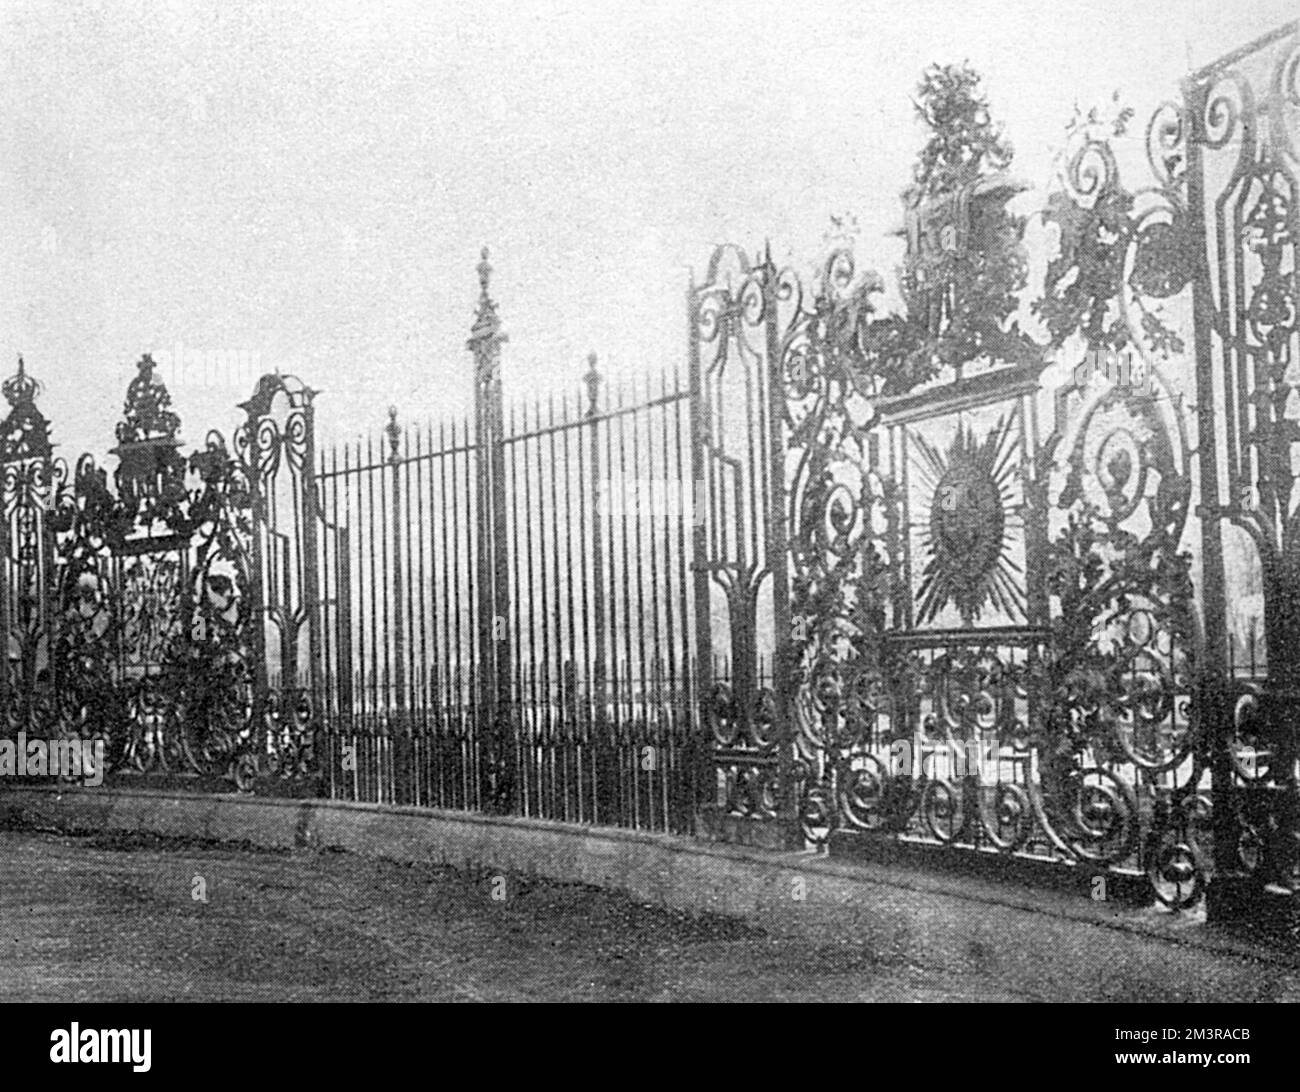 Aufwändige Schriftrollen und Blätter auf den flachen gehämmerten Eisengeländern, die den Star of the Garter in Hampton Court, London, zeigen Datum: 1902 Stockfoto